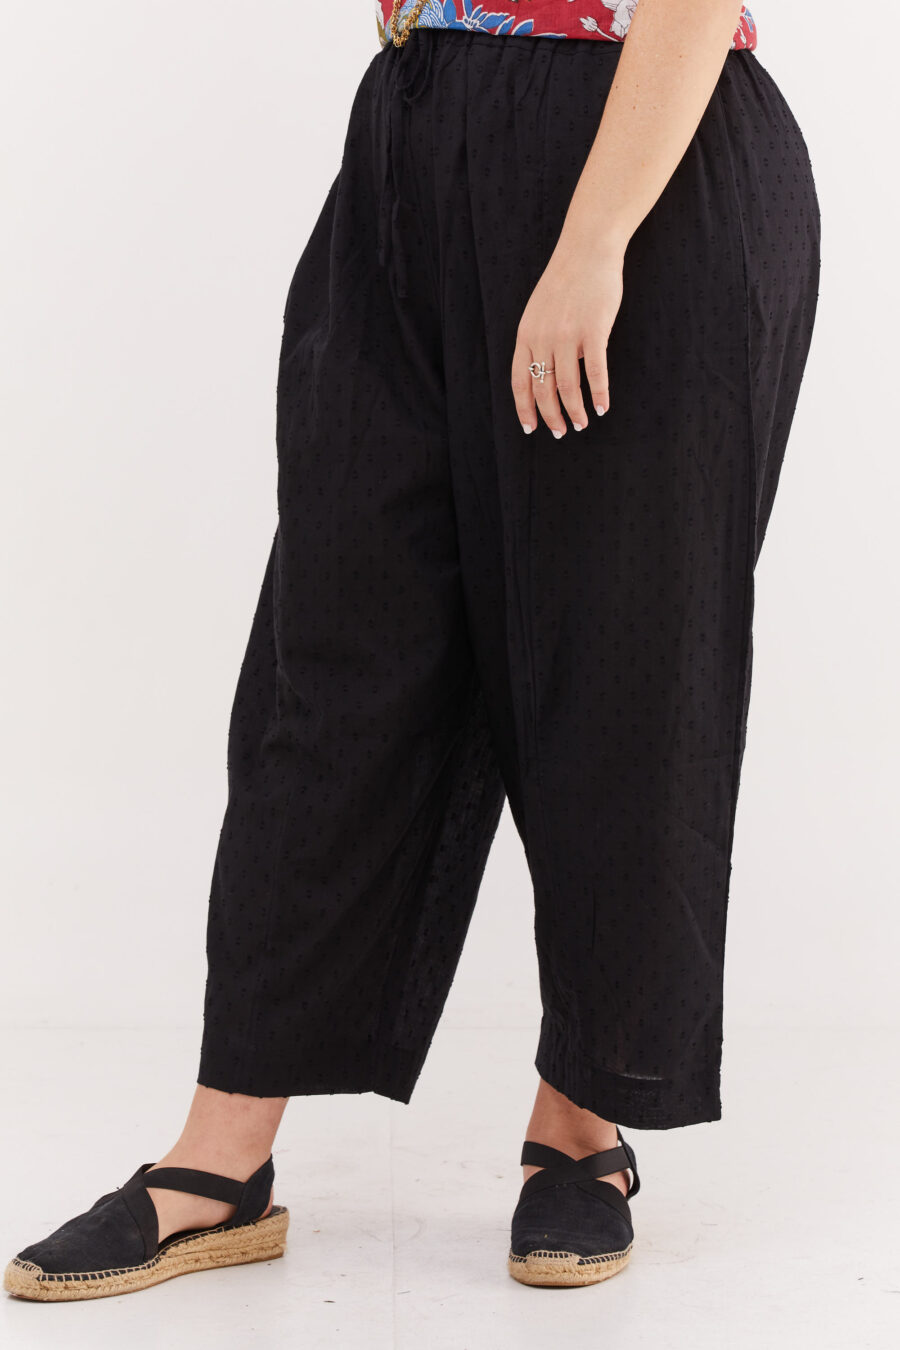 מכנסי בוהו שיק | מכנסיים מעוצבים ונוחים של קומפורט זון בוטיק – מכנסיים שחורים עם עיגולים עדינים בבד שיוצרים טקסטורה מיוחדת